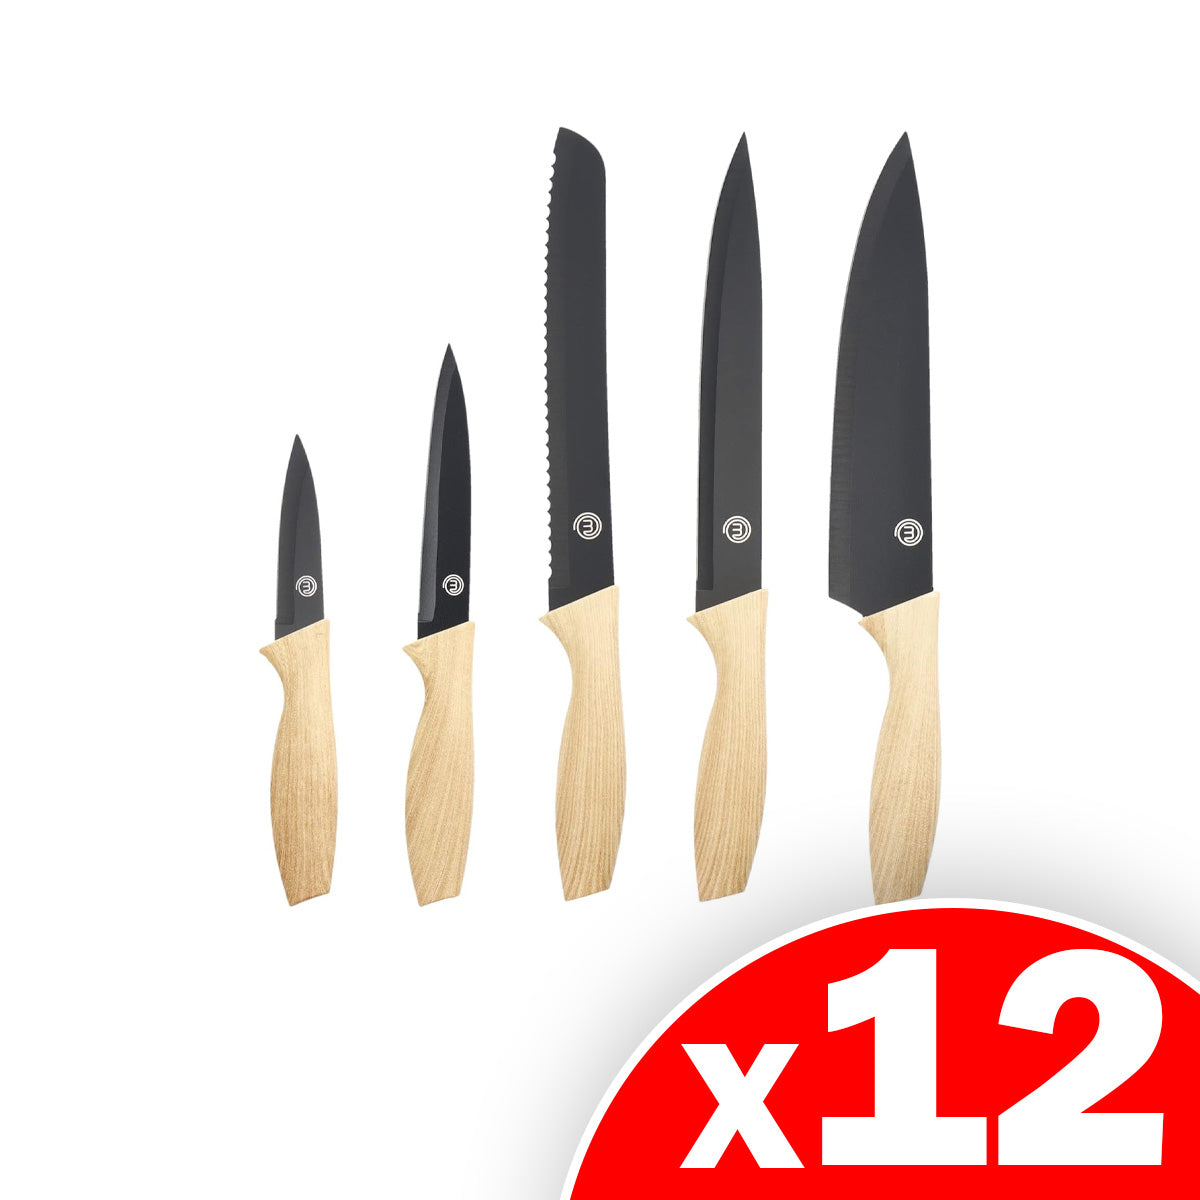 MasterChef Knife Set of 5 Kitchen Knives for Cooking, 12 Sets